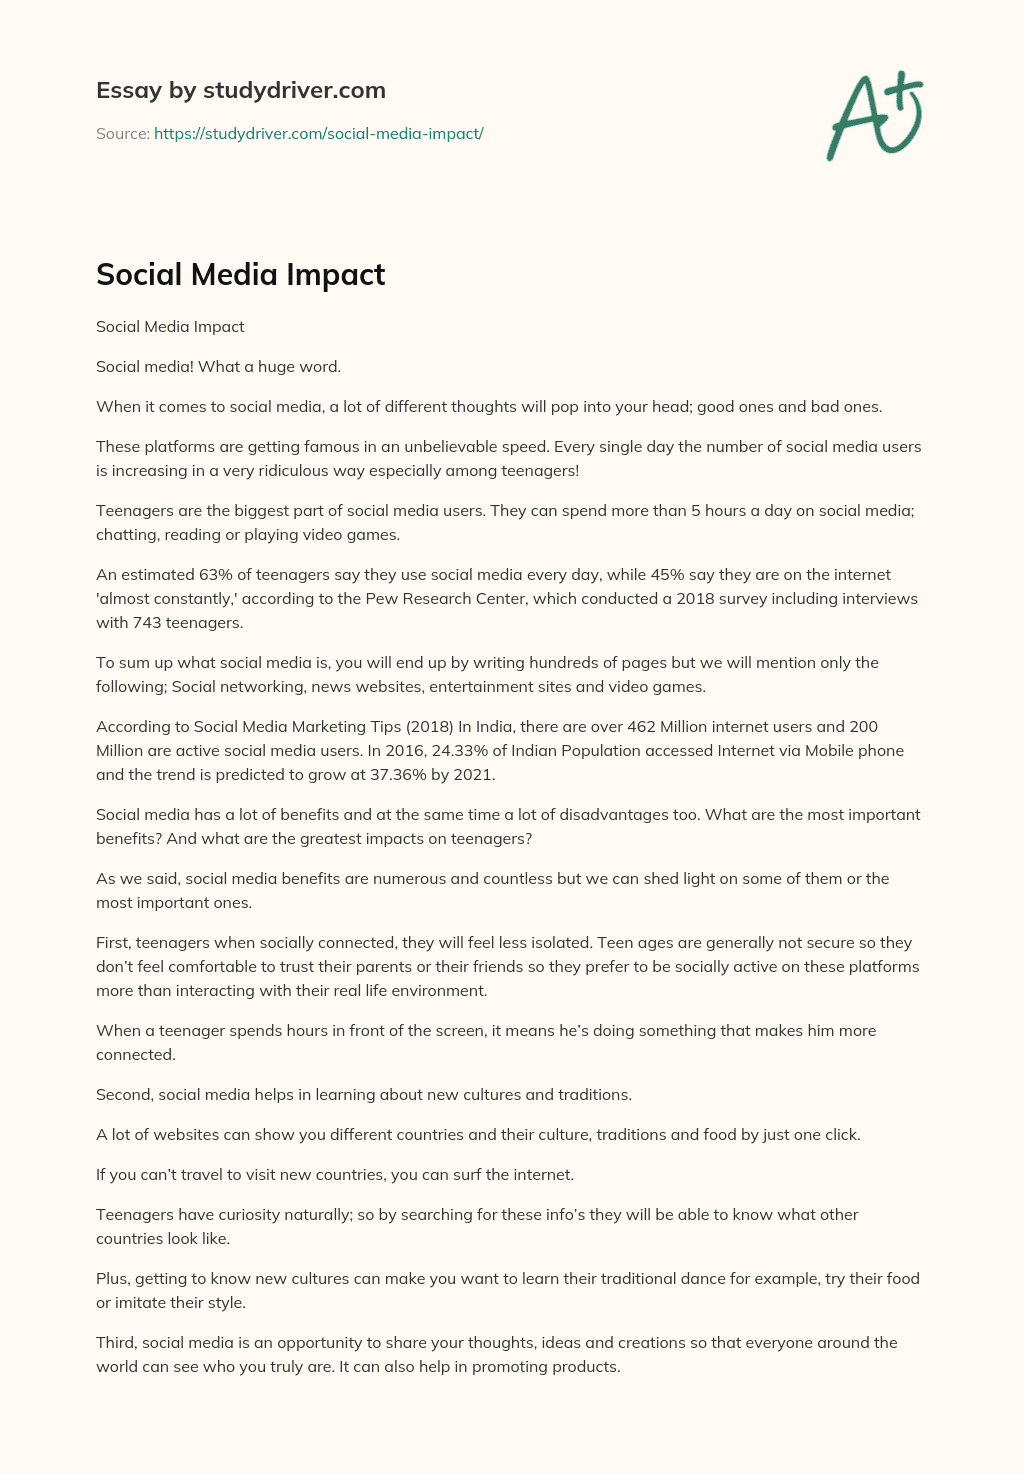 Social Media Impact essay